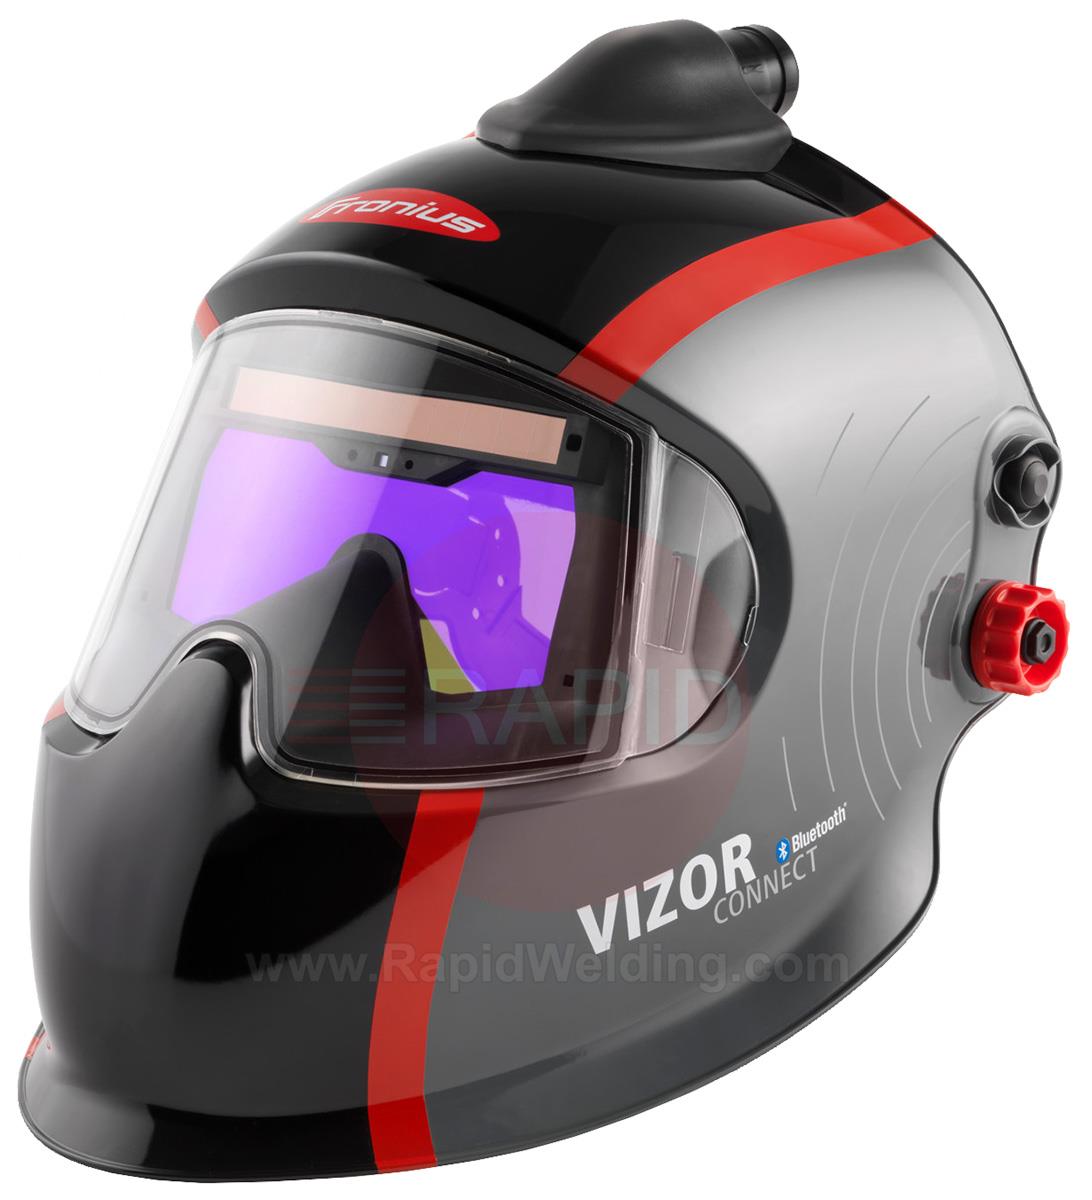 42,0510,0314  Fronius Vizor Connect Auto Darkening Welding Helmet PAPR System, Shades 5-12